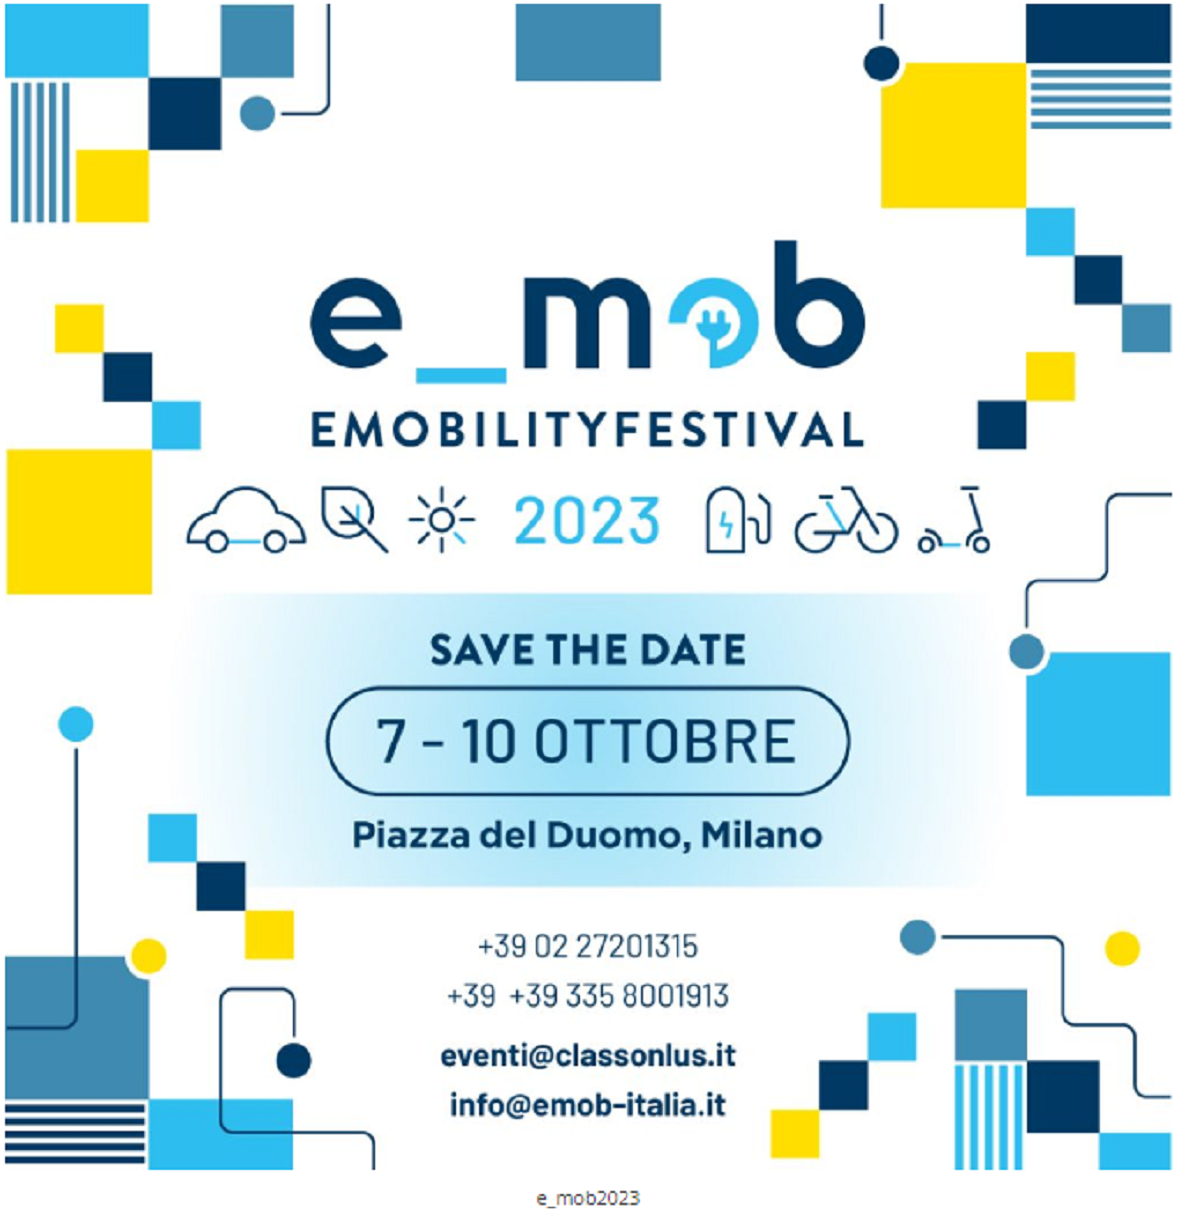 E-Mob 2023 Emobility Festival